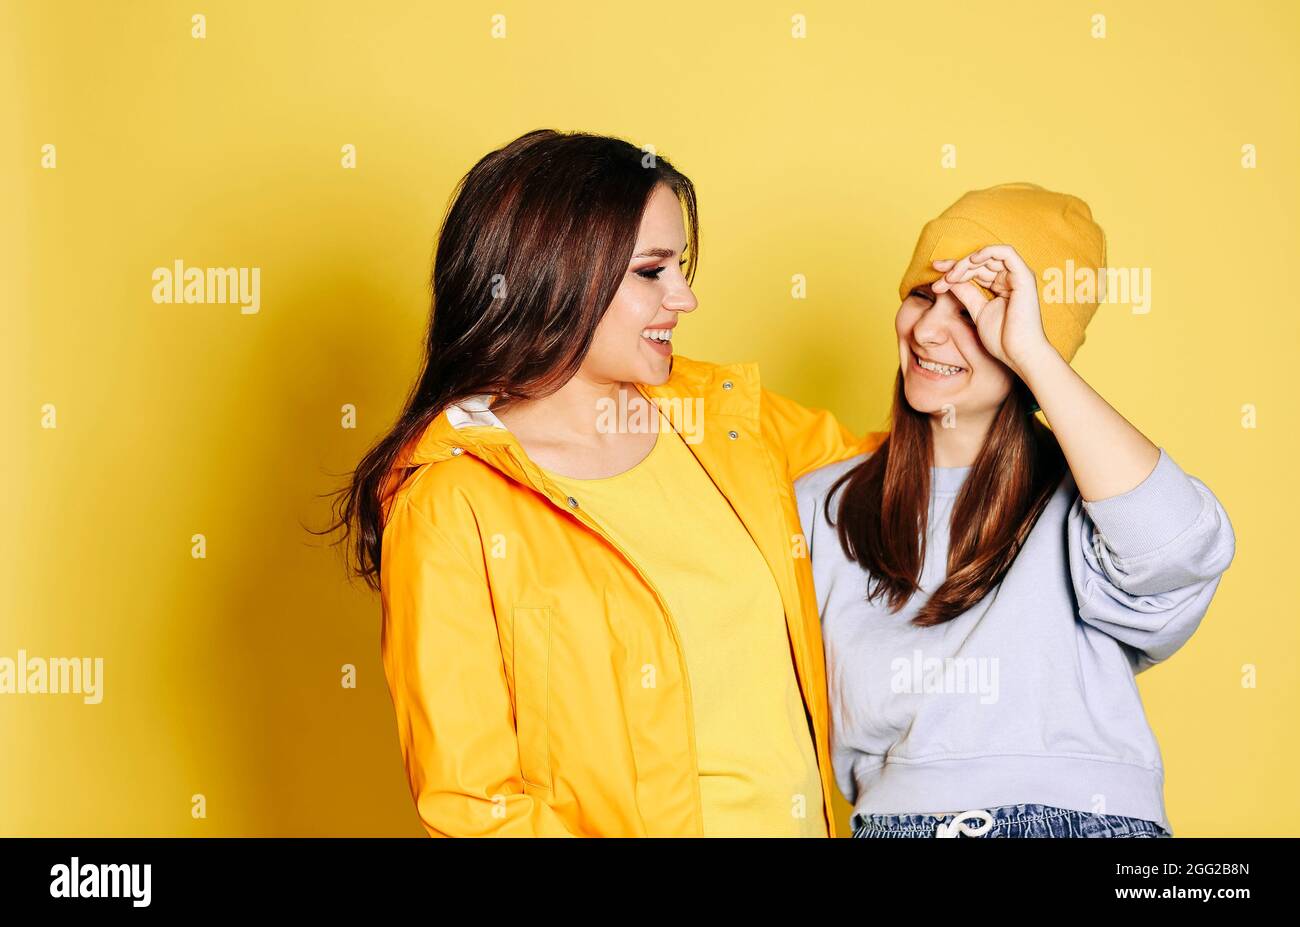 Deux jolies amies souriantes sur fond jaune. Émotions, personnes, adolescents et concept d'amitié Banque D'Images